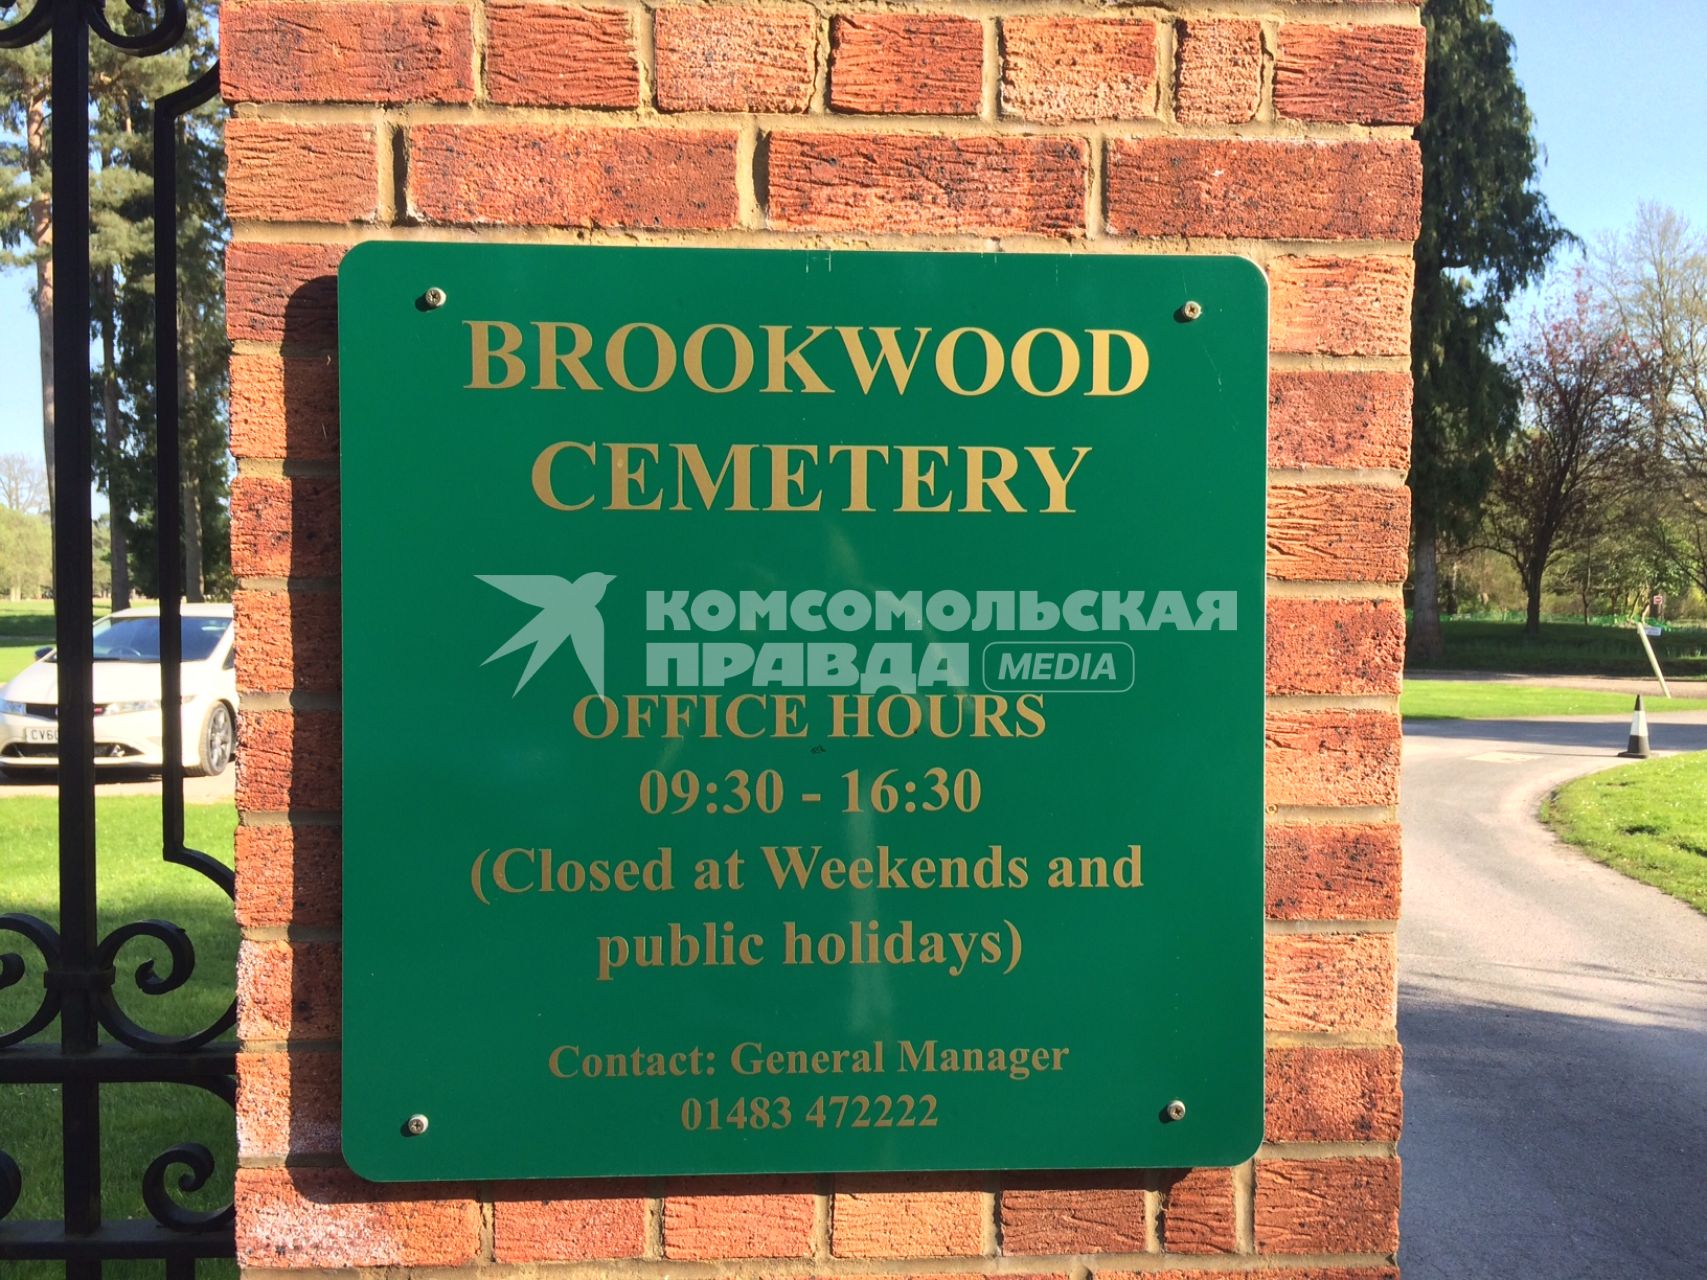 Великобритания, Лондон. Кладбище Бруквуд в пригороде Лондона, где похоронен Борис Березовский.